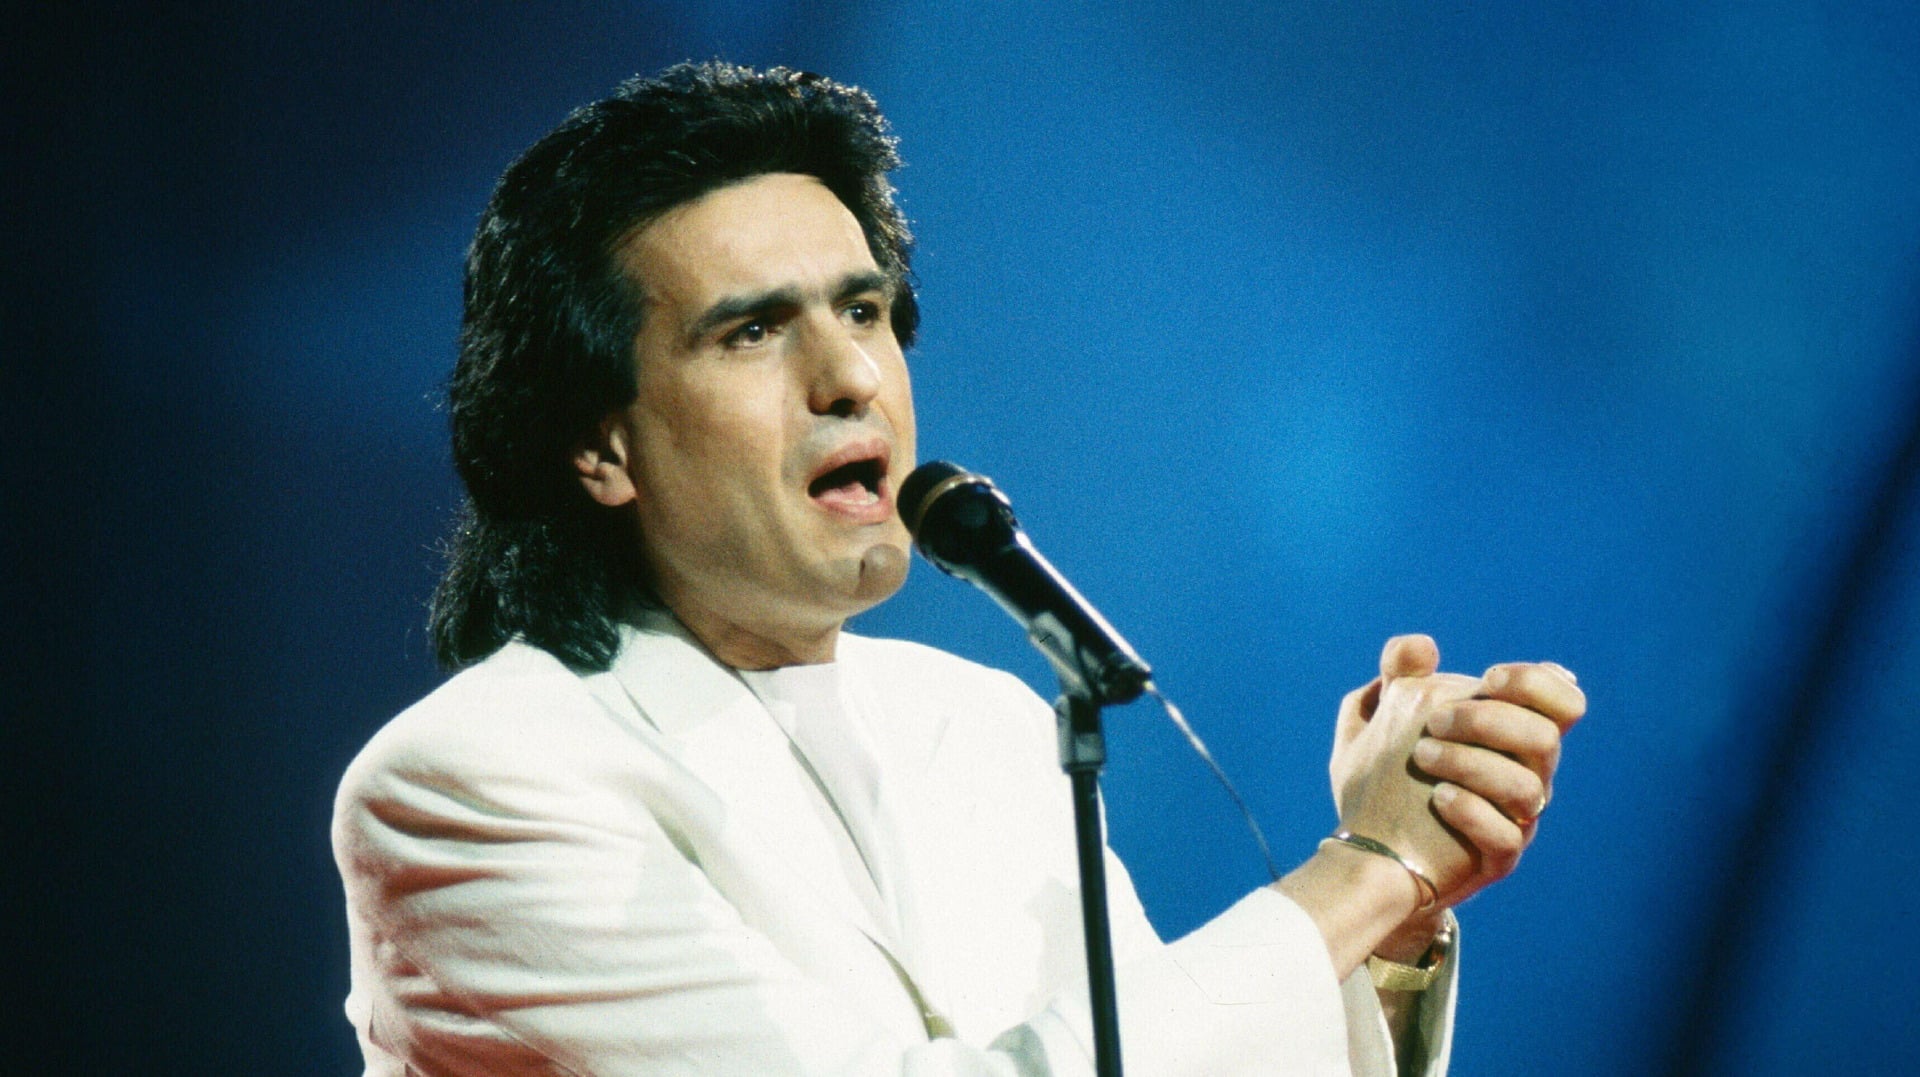 Toto Cutugno az 1990-es Eurovíziós Dalfesztiválon, Zágrábban, az akkori Jugoszláviában - az Eurovision.tv fotója